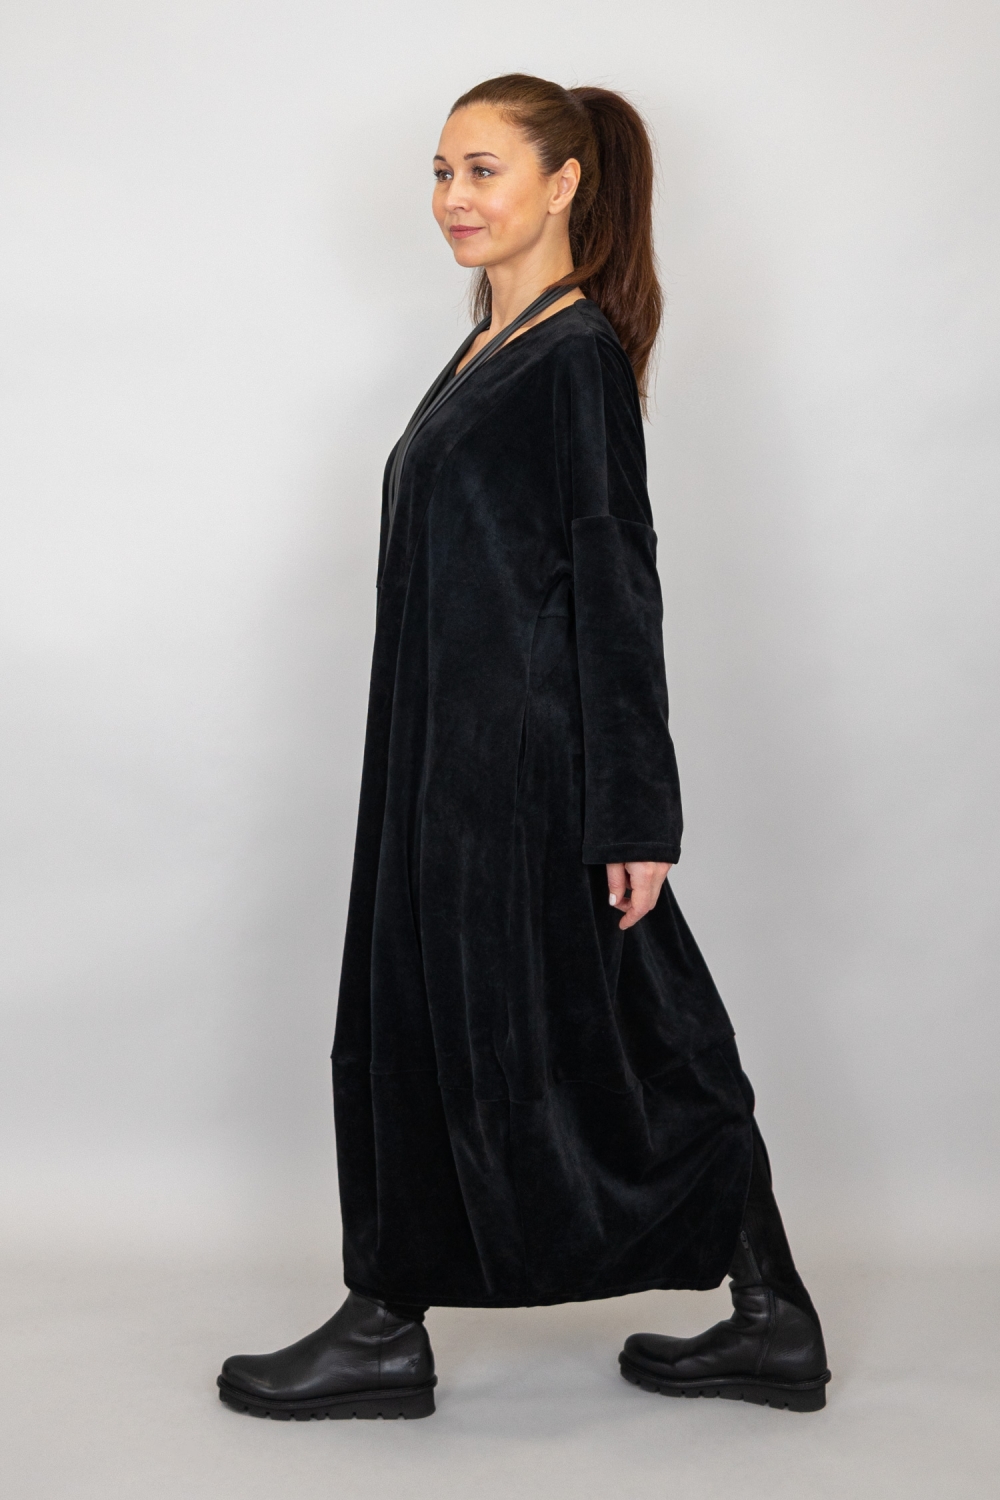 Laurer Kleid in Tulpenform aus Nicky Velours Stoff in schwarz